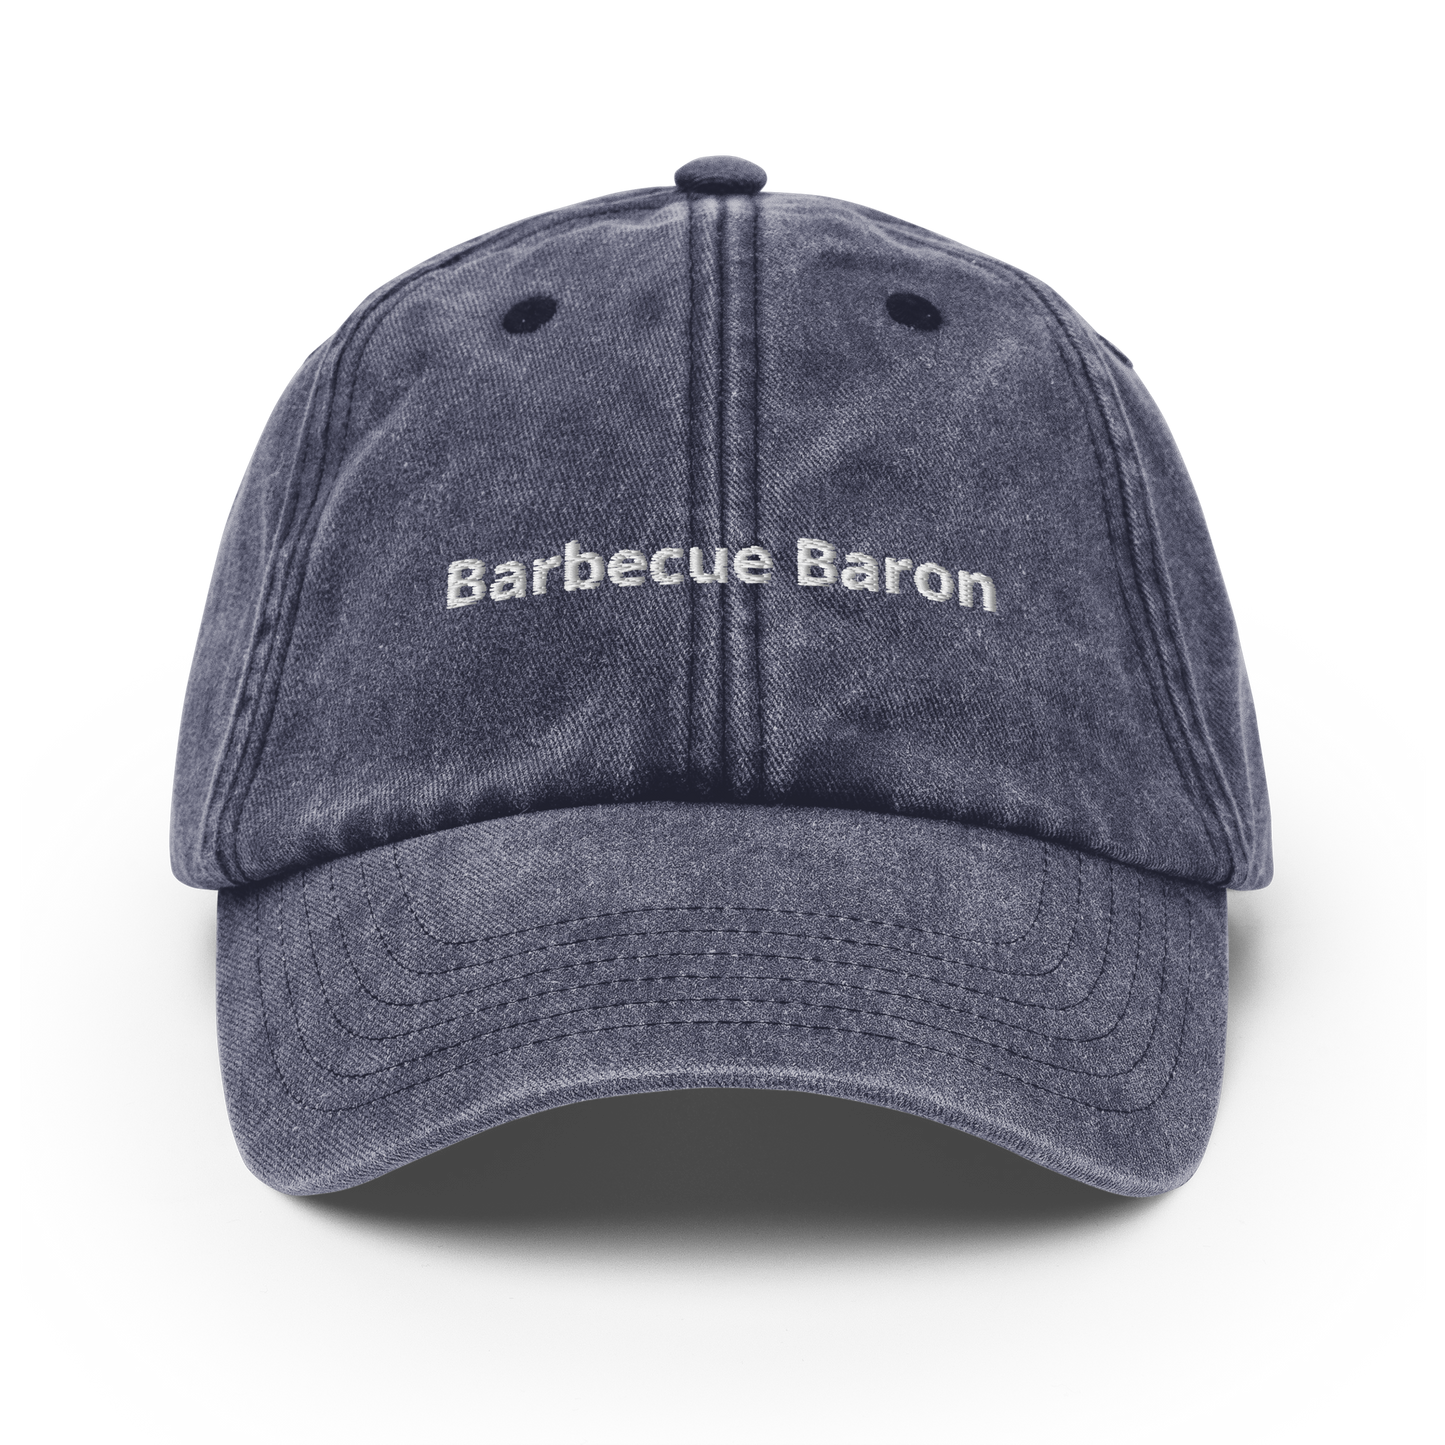 Barbecue Baron - Vintage Hat